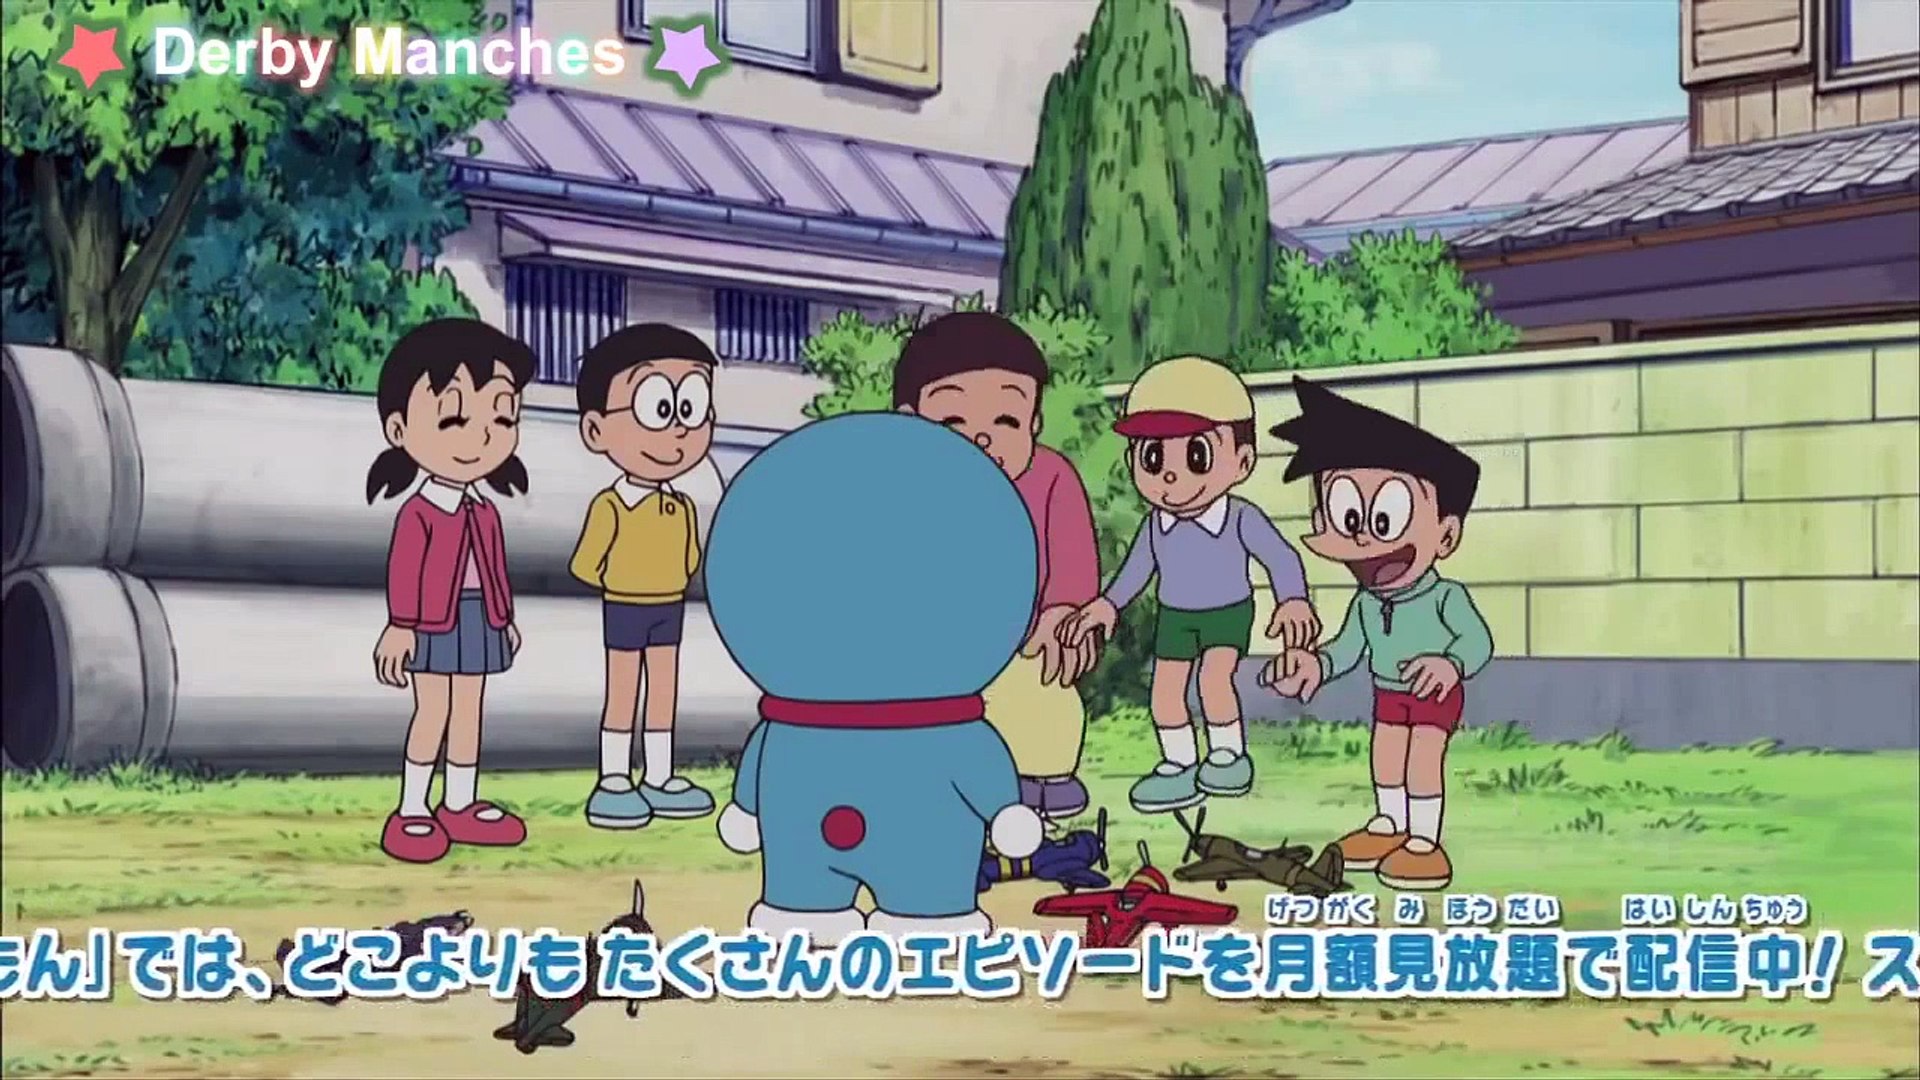 ドラえもん Doraemon Ep 401 ぼくらの大空中戦 ニクメナイン動画 Video Dailymotion